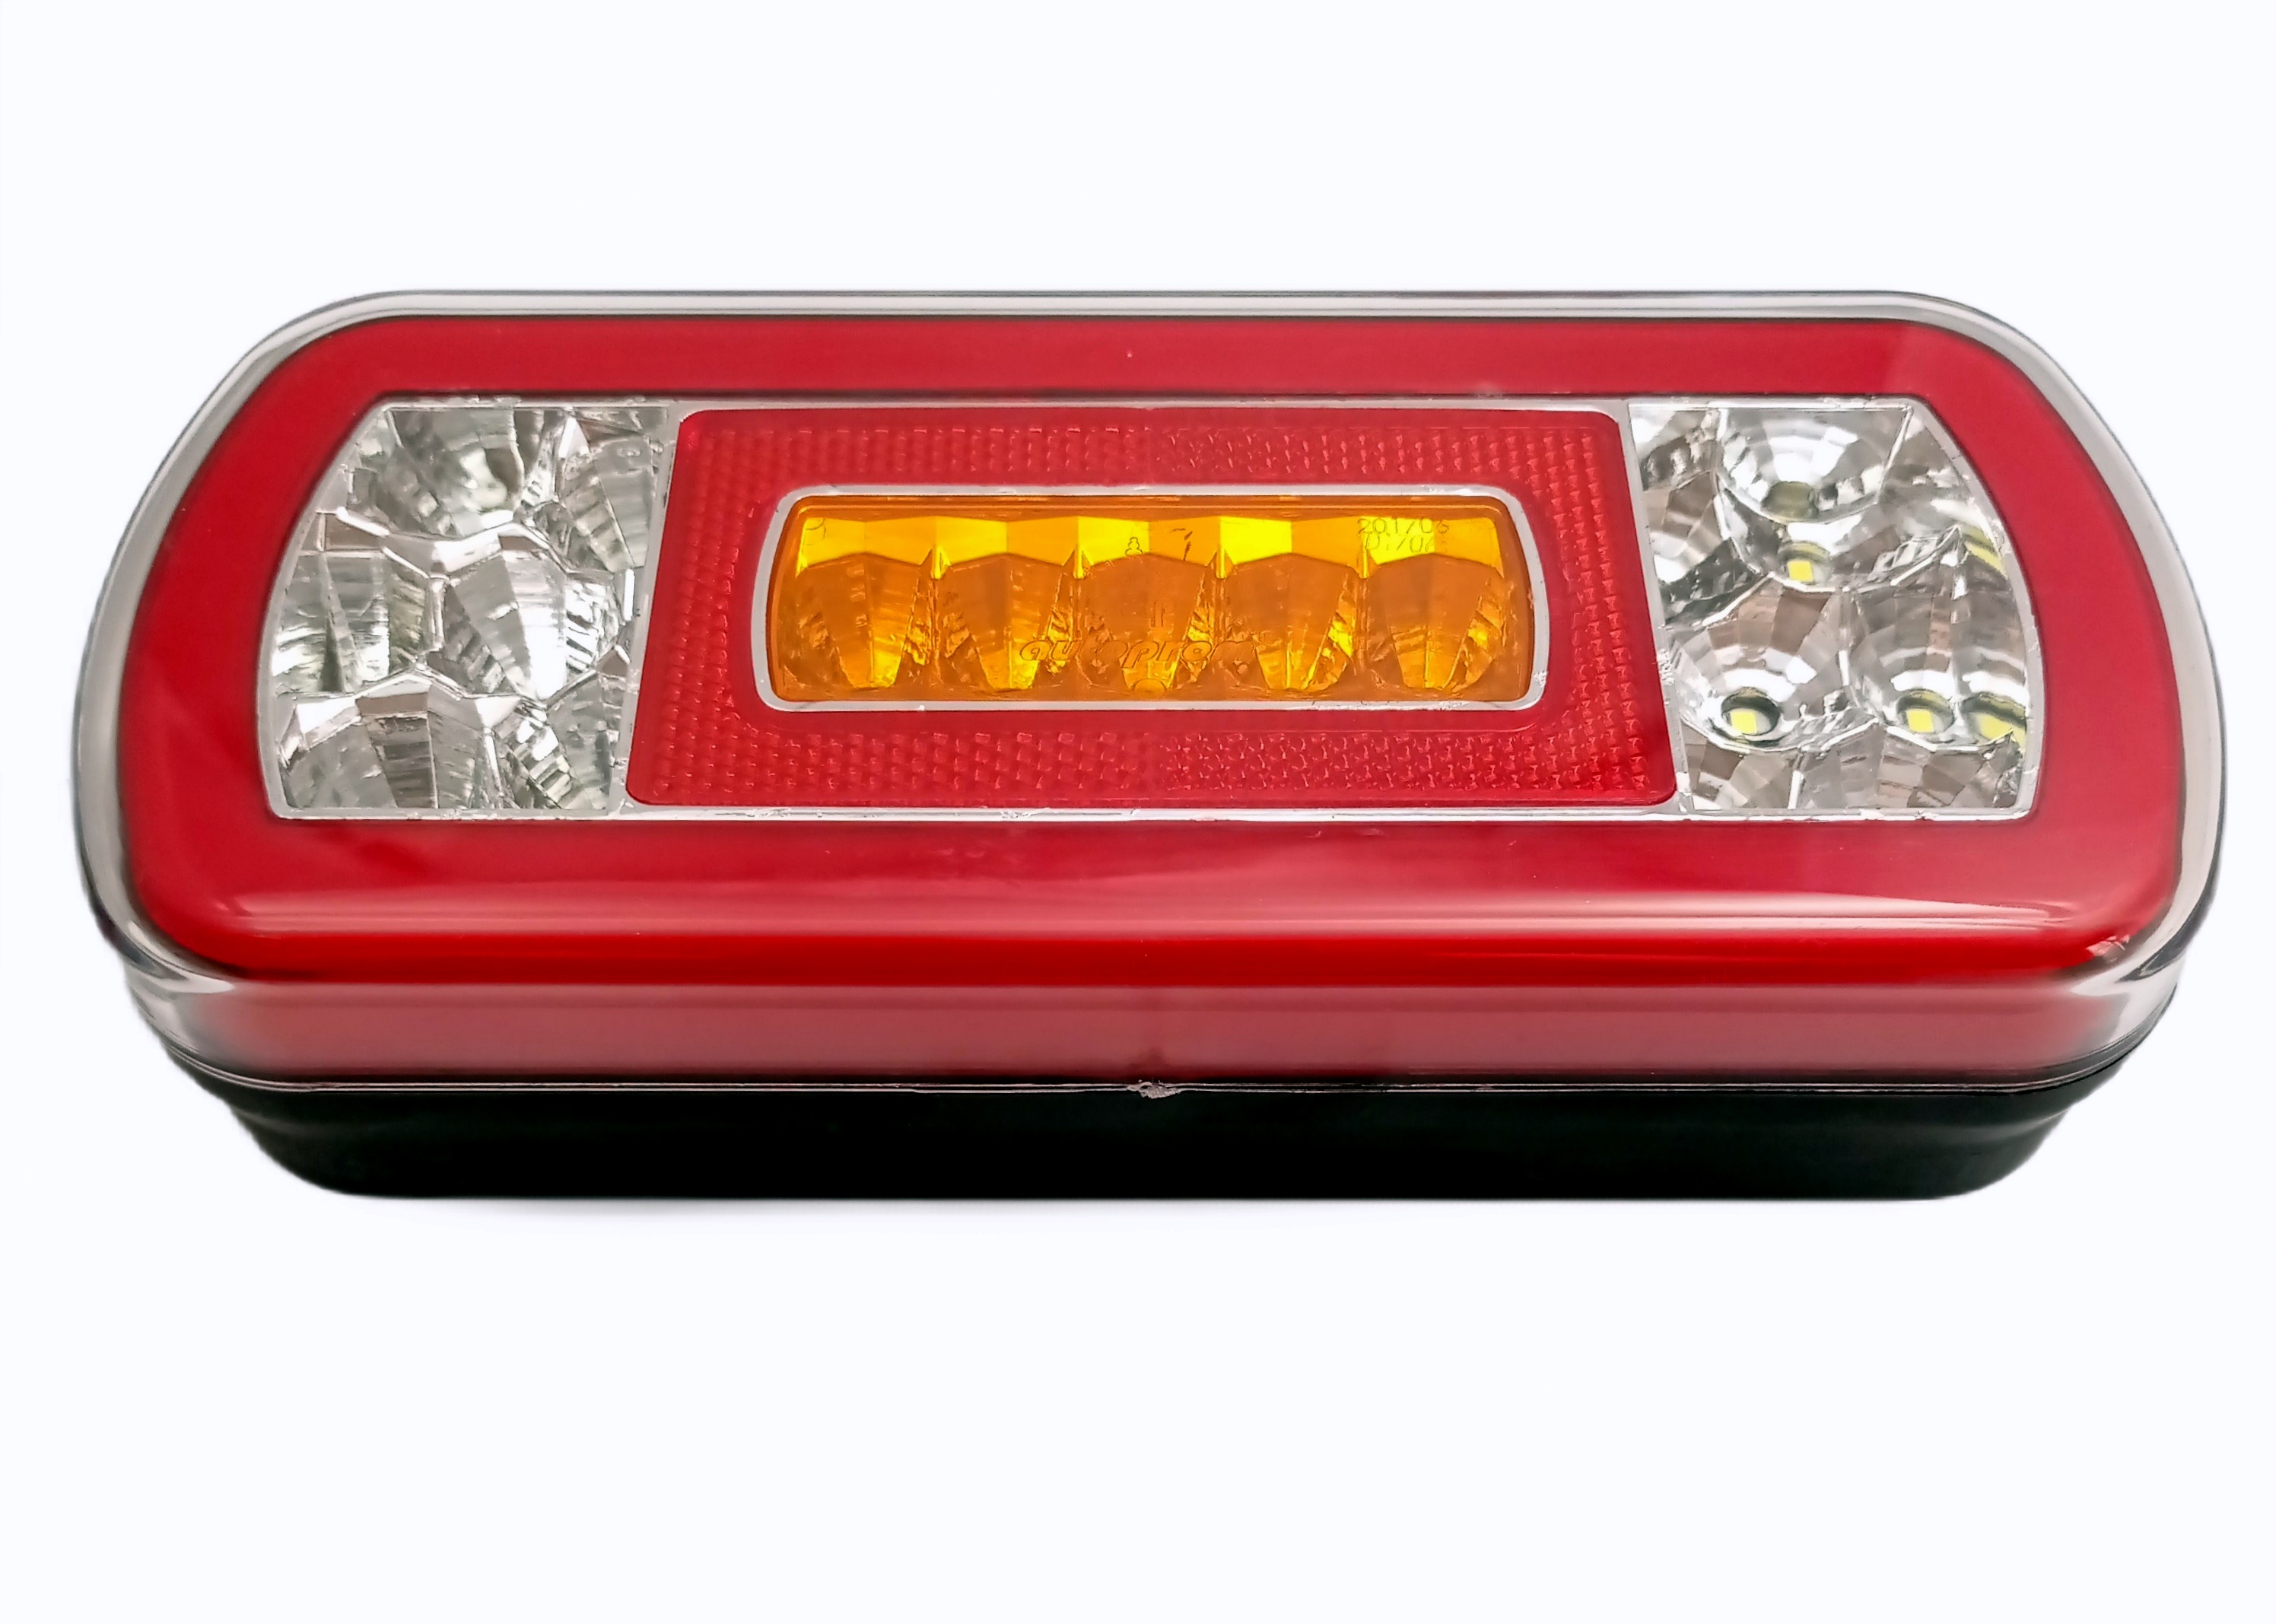 LED Rear Tail Reverce Light Lamp Trailer Truck Caravan Bus Van 12v